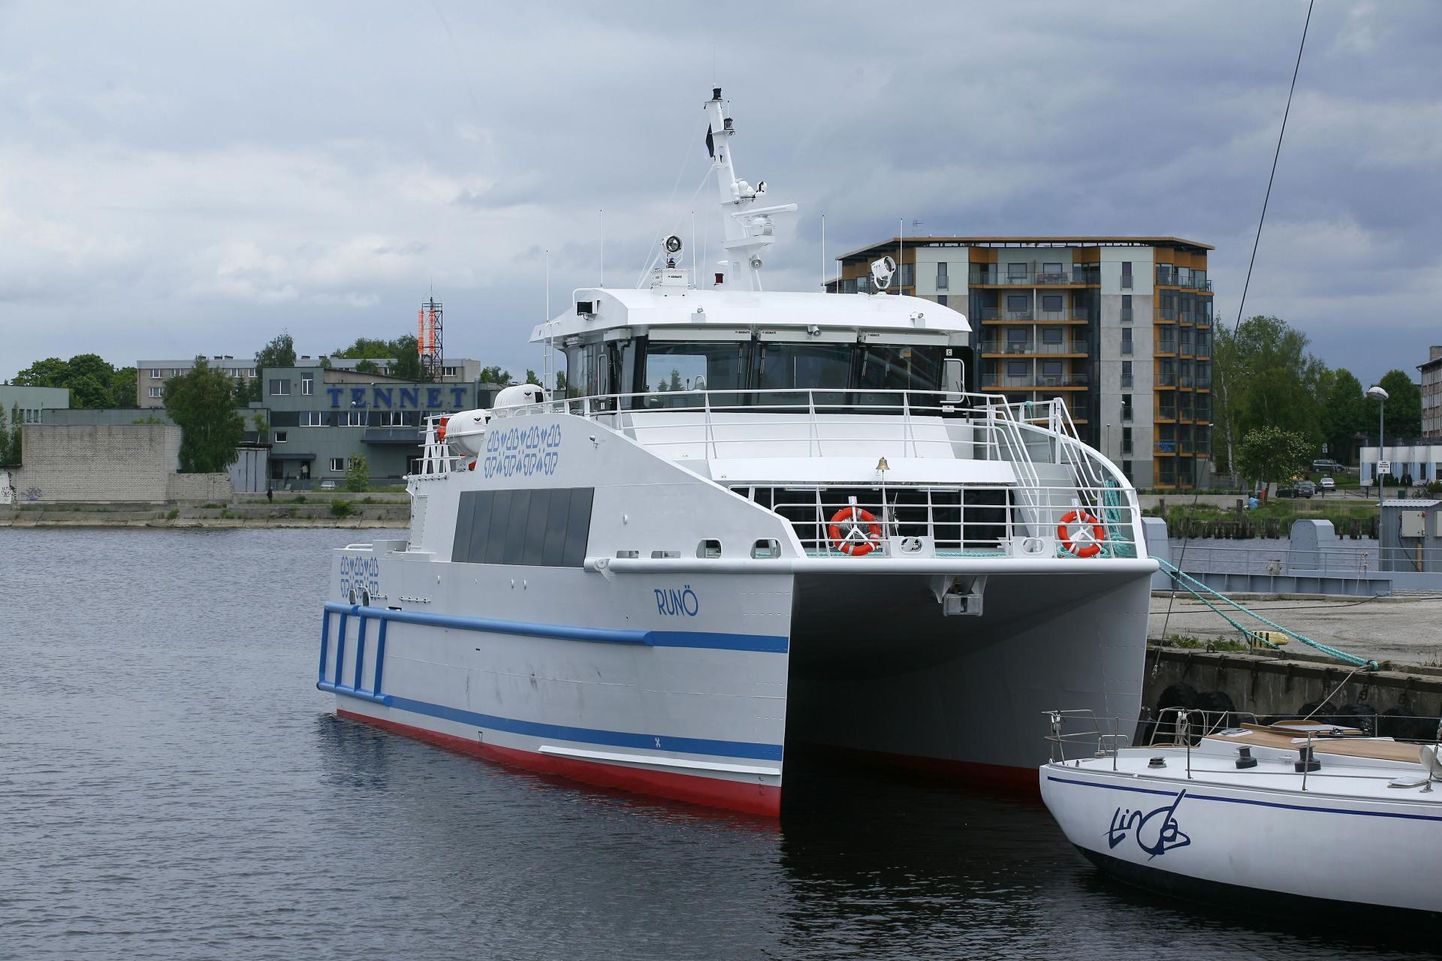 Kiirkatamaraan Runö võib pühapäeval Ringsu sadamast väljuda kella 17 asemel juba keskpäeval.